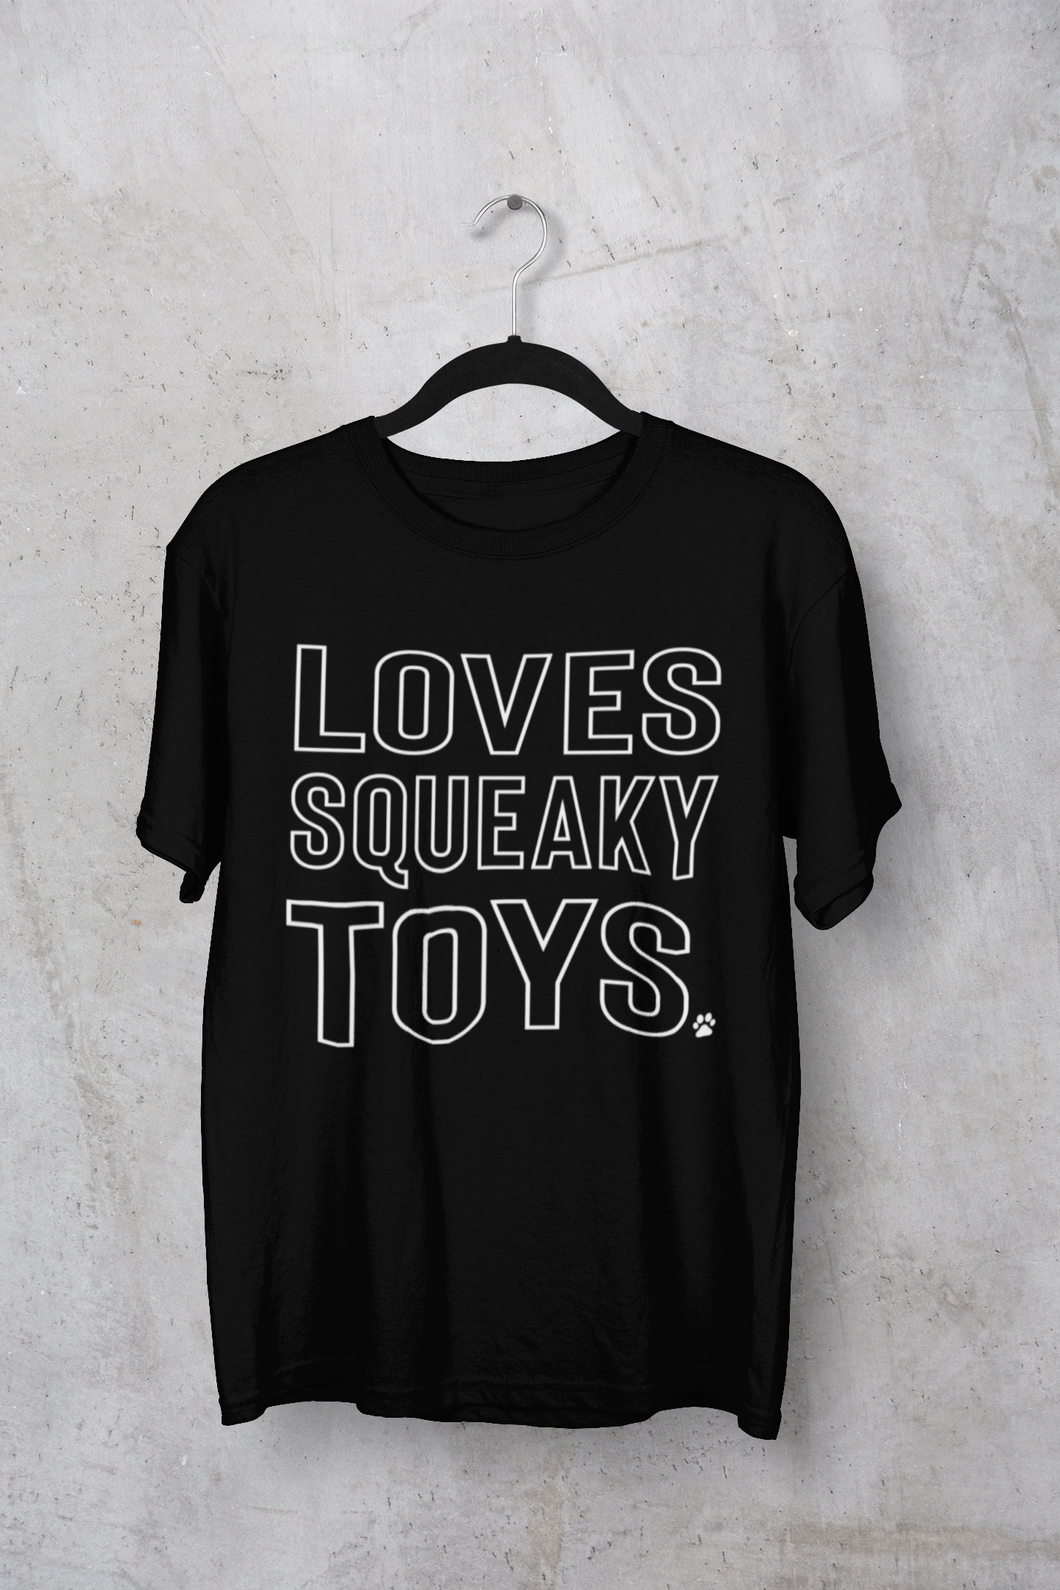 Loves Squeaky Toys Men's/Unisex or Women's T-shirt